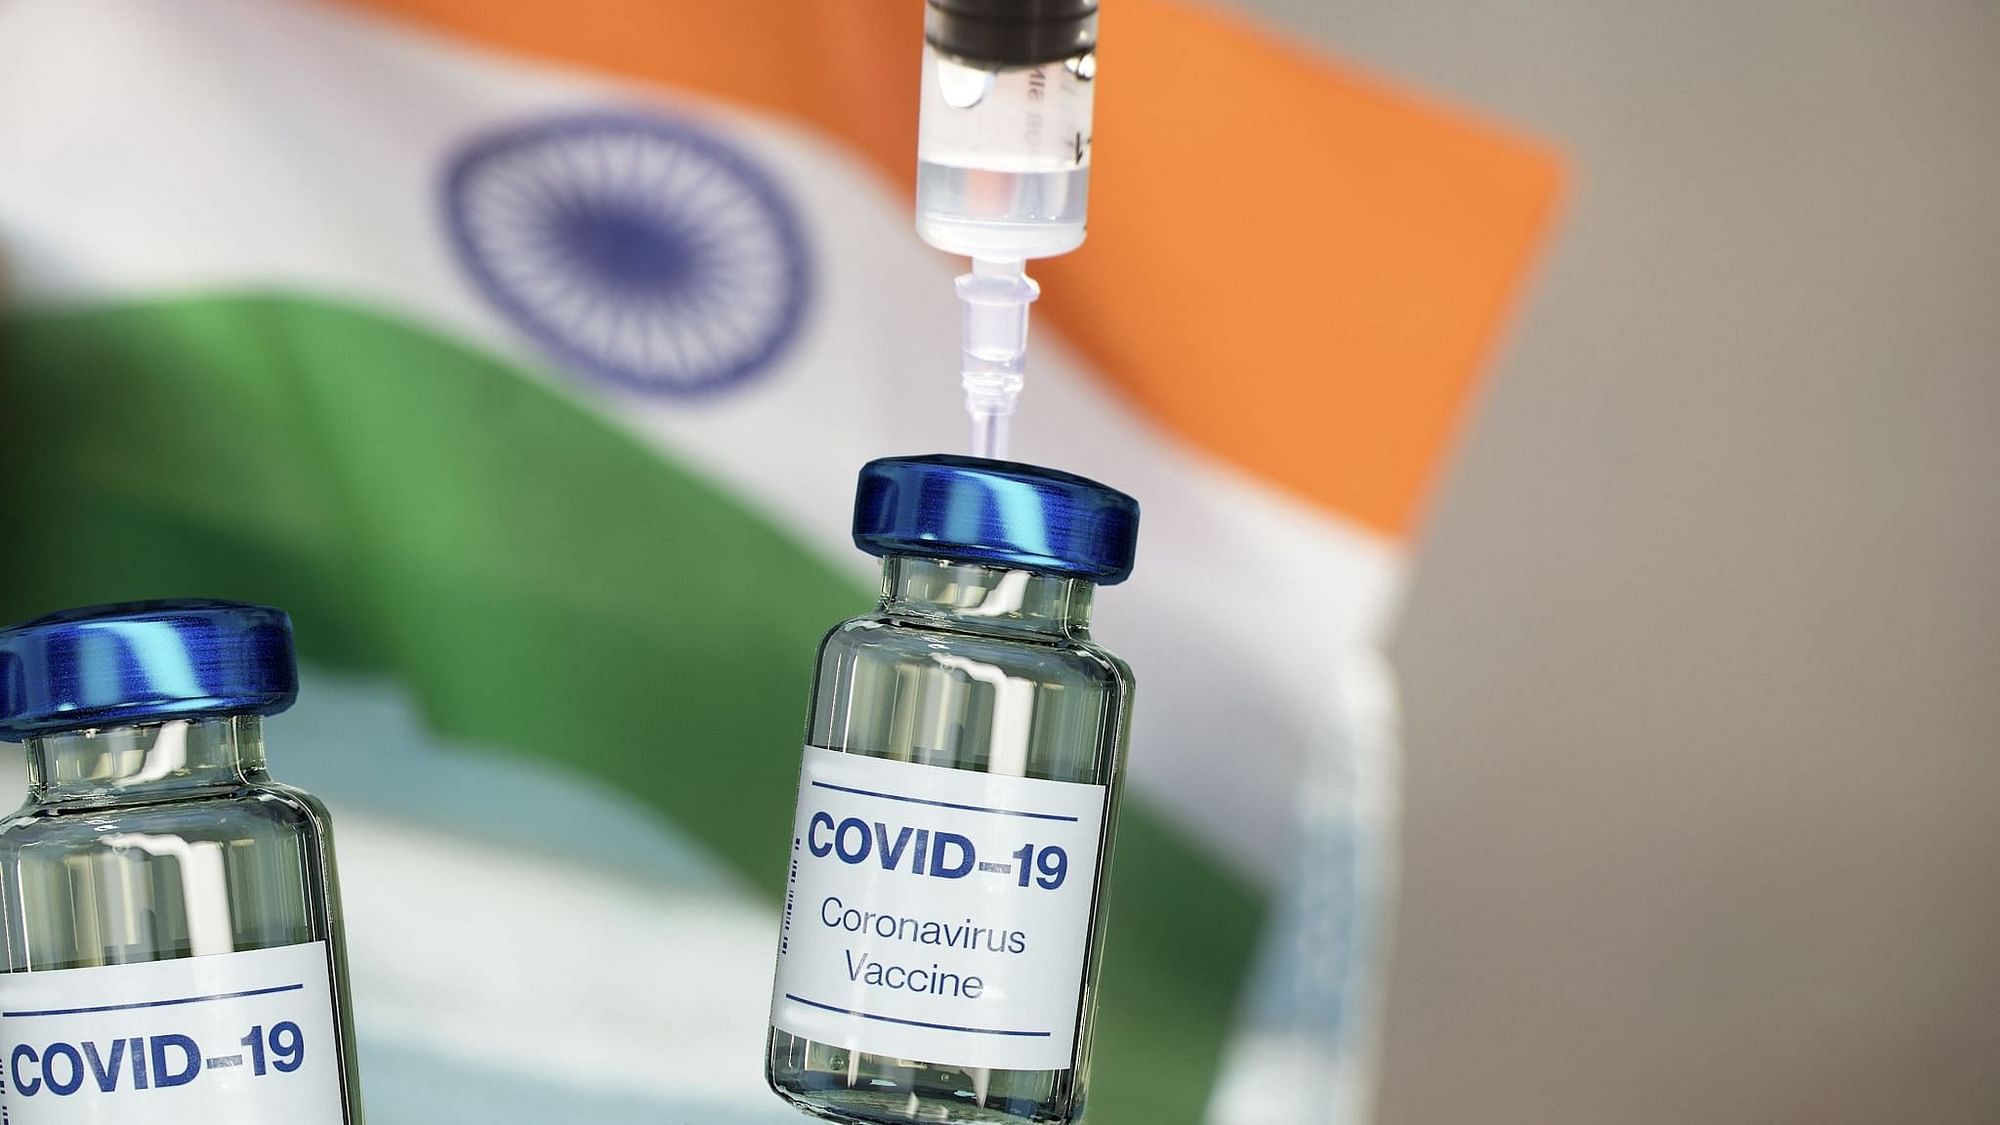 <div class="paragraphs"><p>COVID-19 vaccine.</p></div>